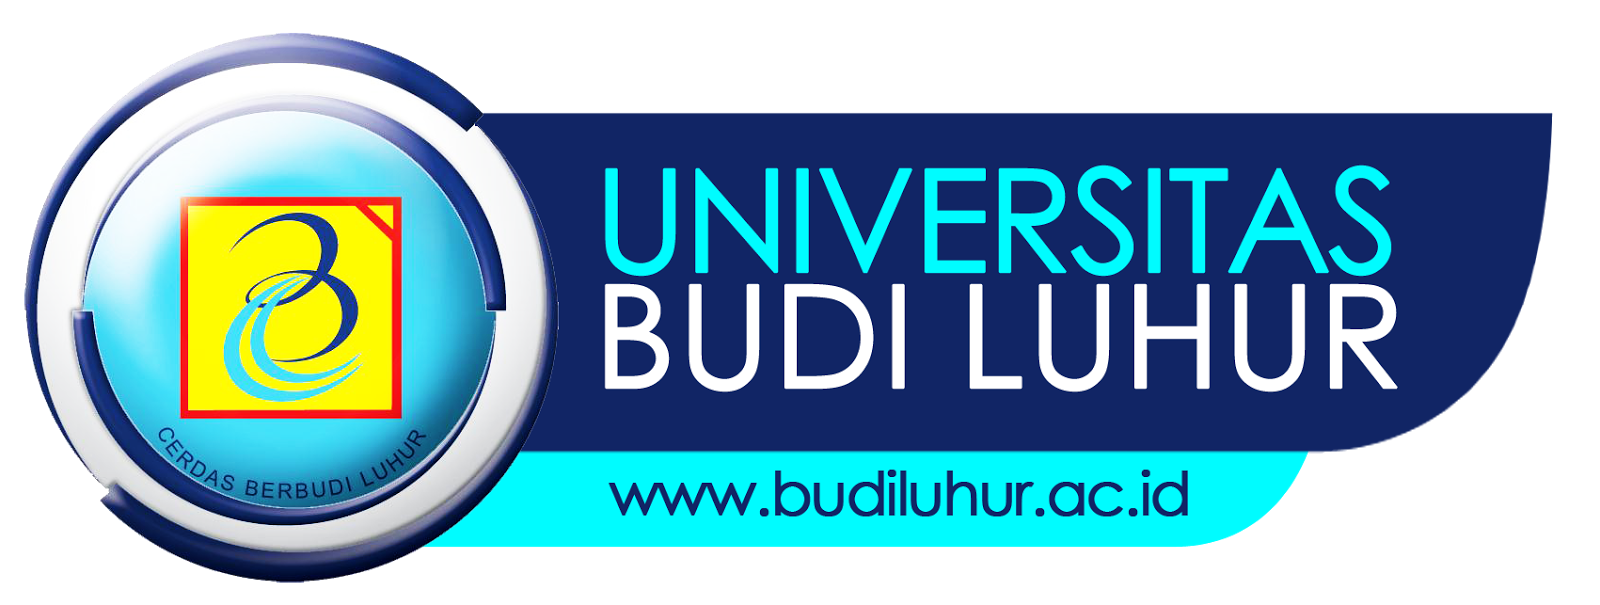 [Bukan] Dono Warkop Kenapa Saya Kuliah di Universitas Budi Luhur?